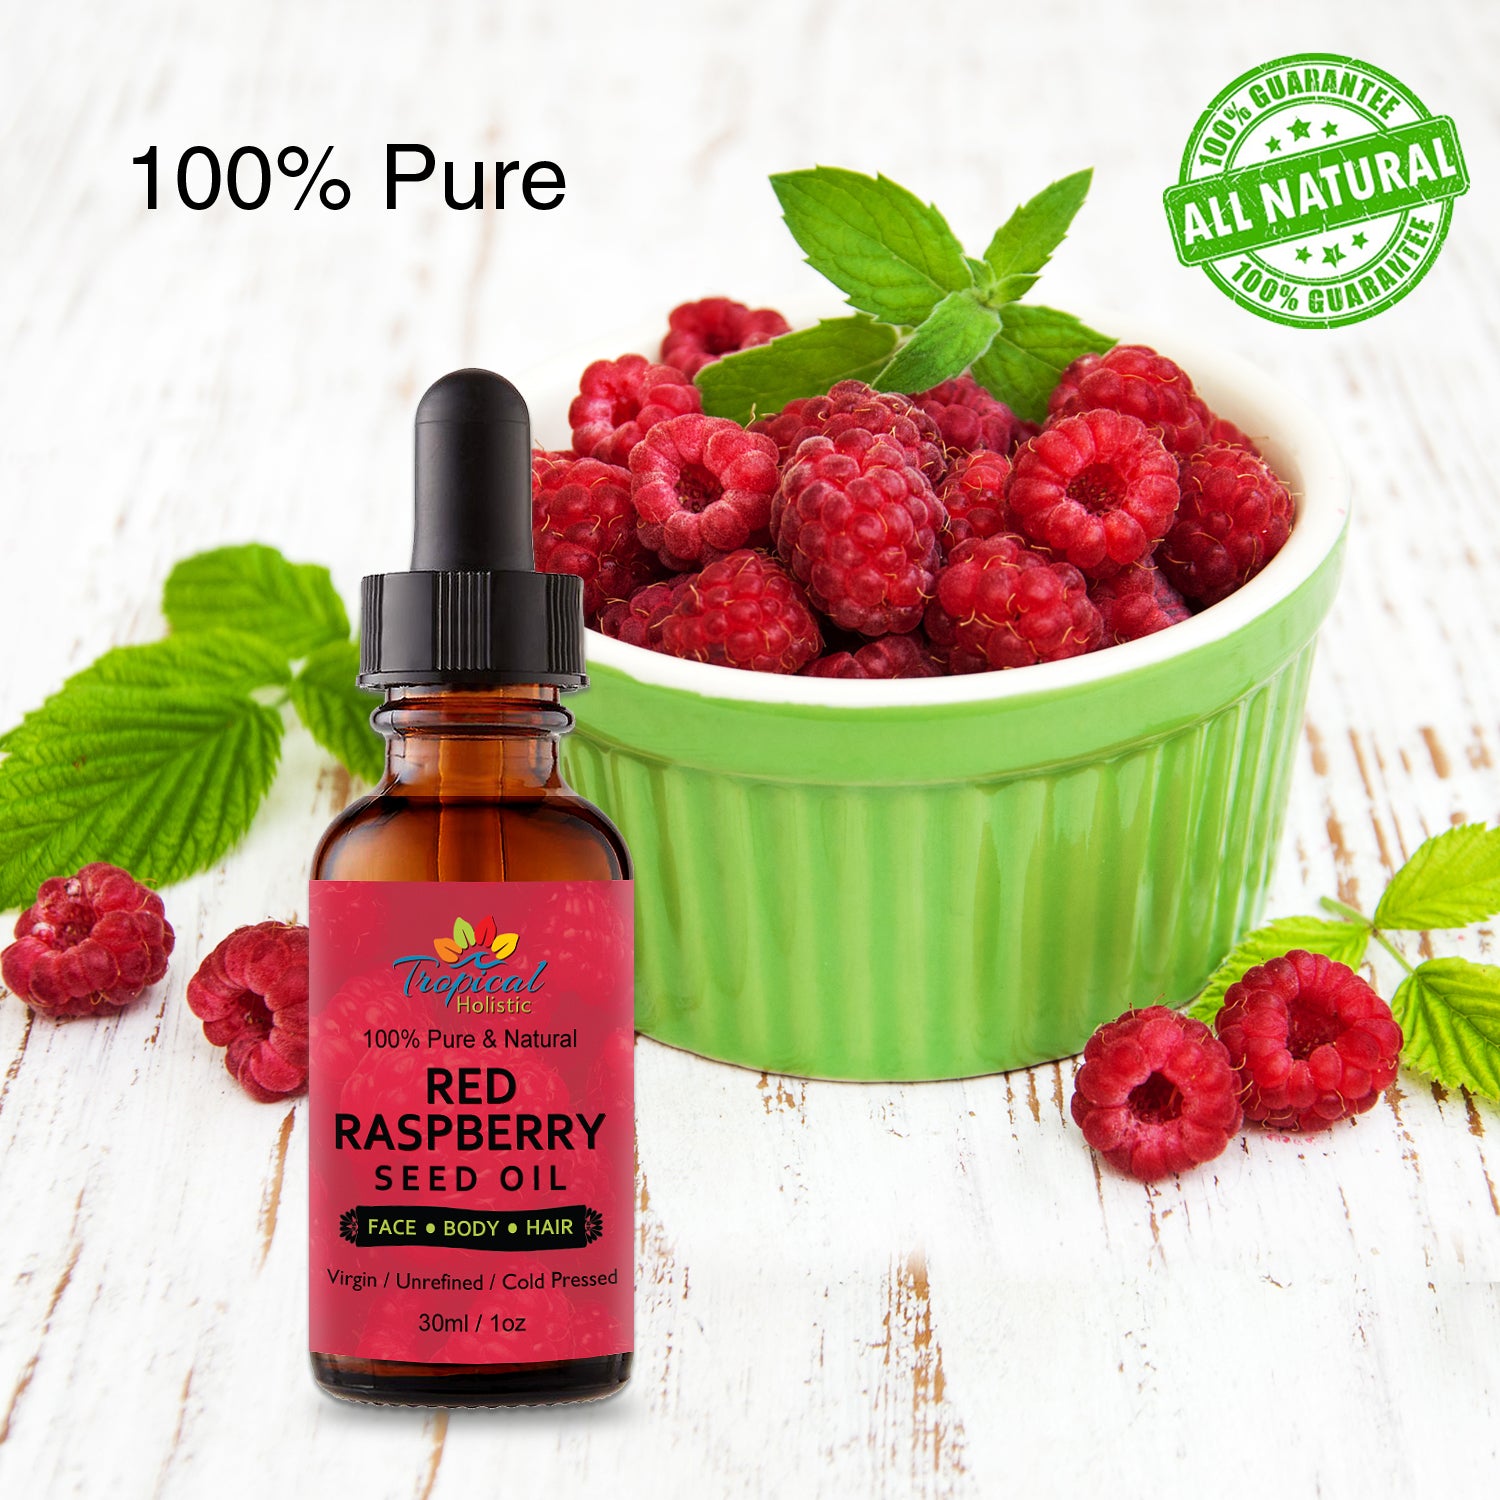 Strawberry Essential Oil 100% Pure Diffuser Oil for Diffuser Skin